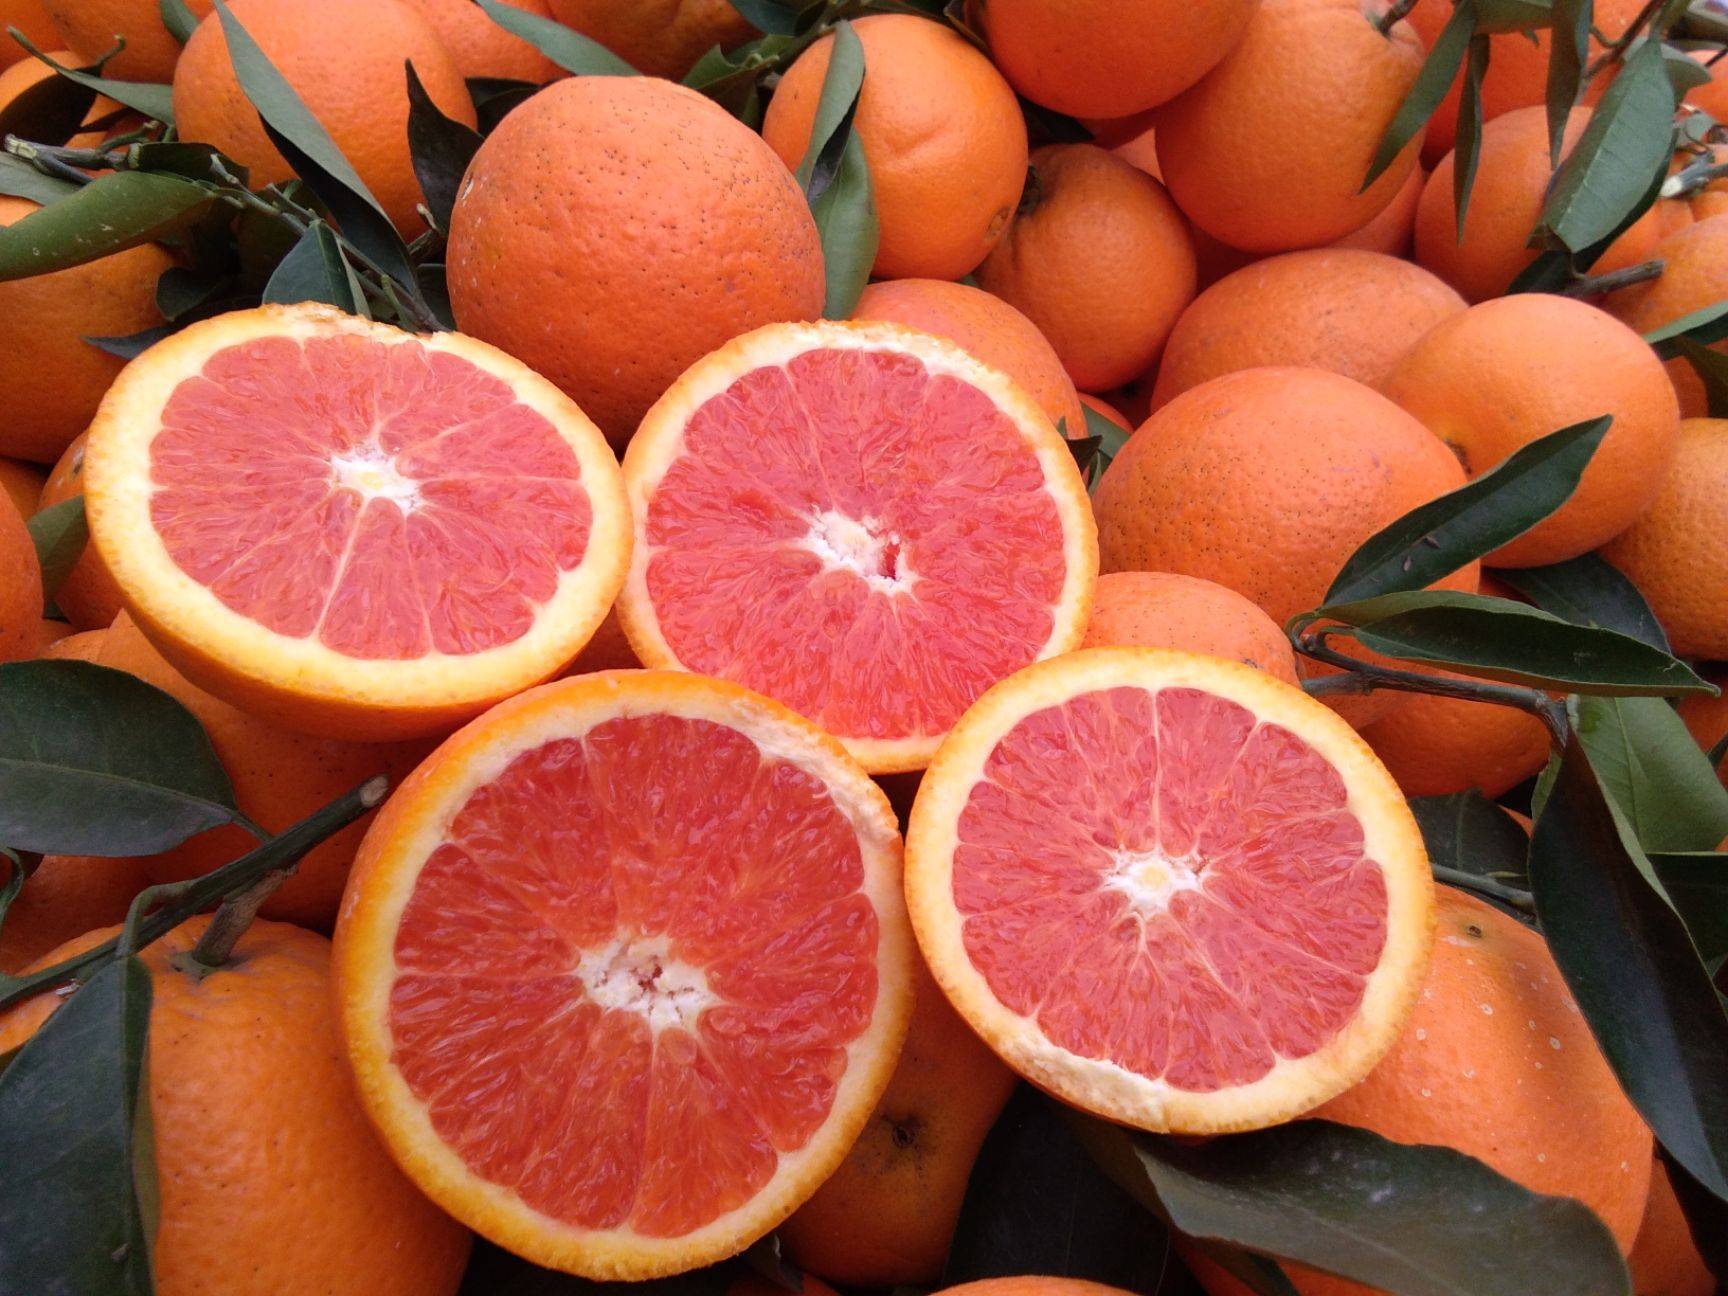 血橙在护肤上有什么功效?